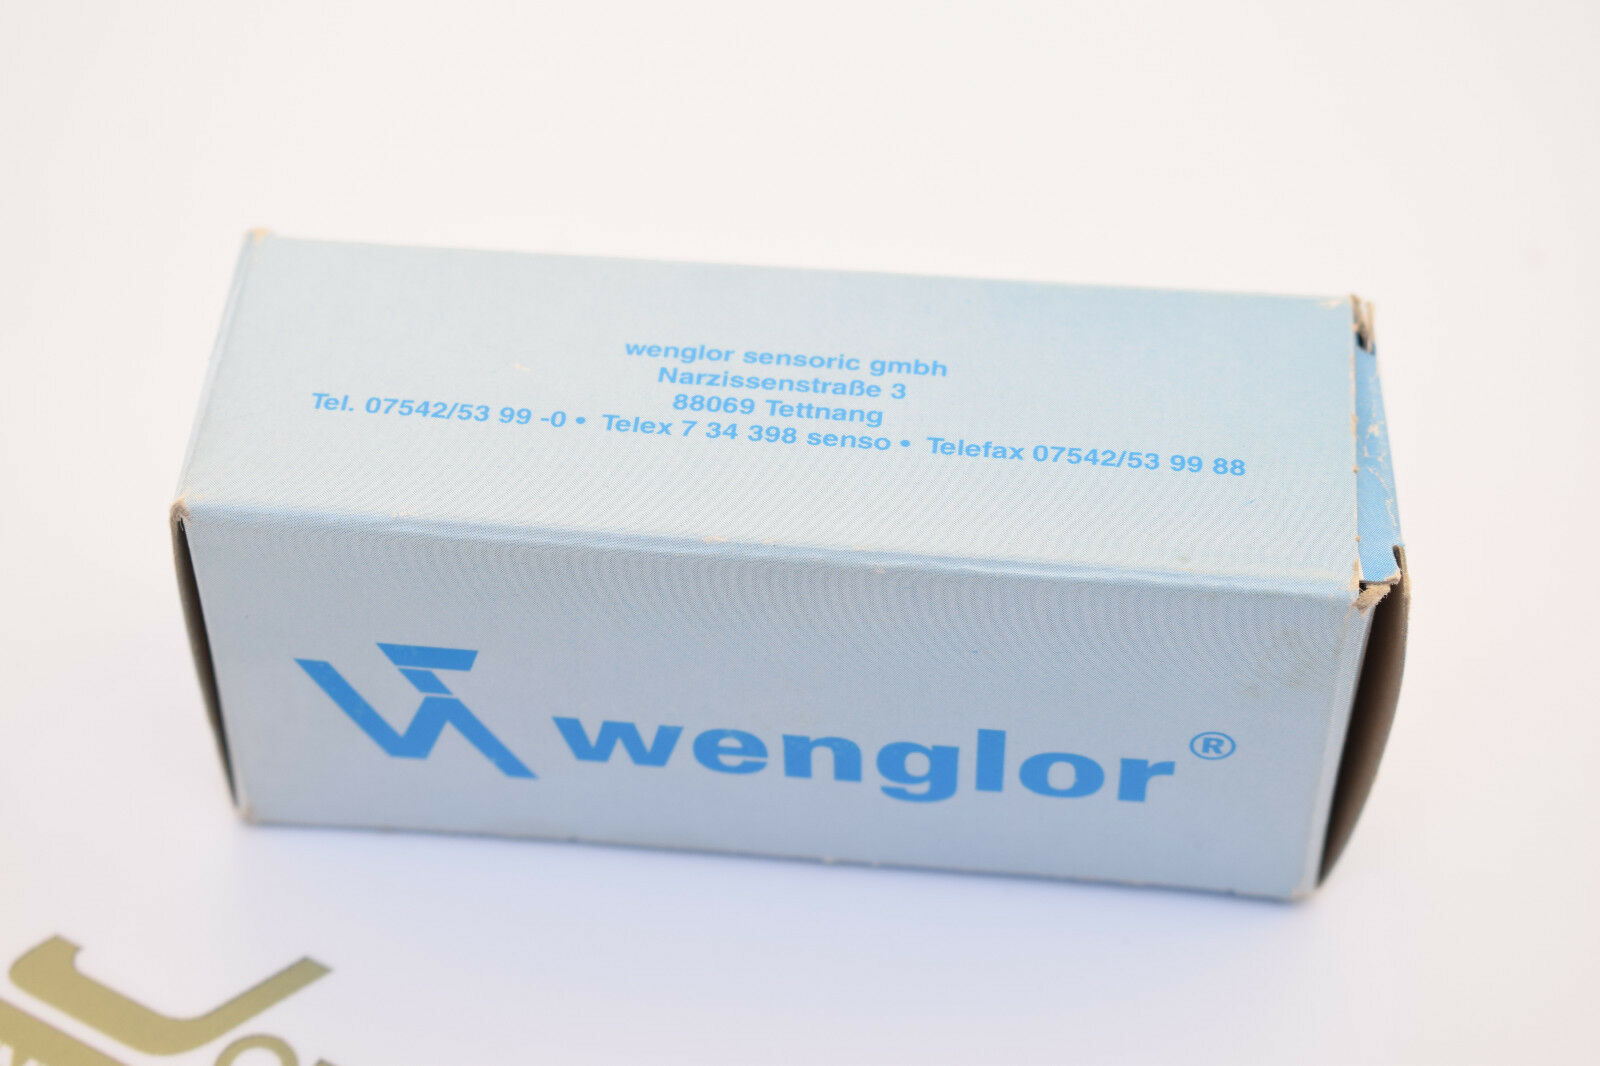 Wenglor Optischer Schalter HW11PB2 